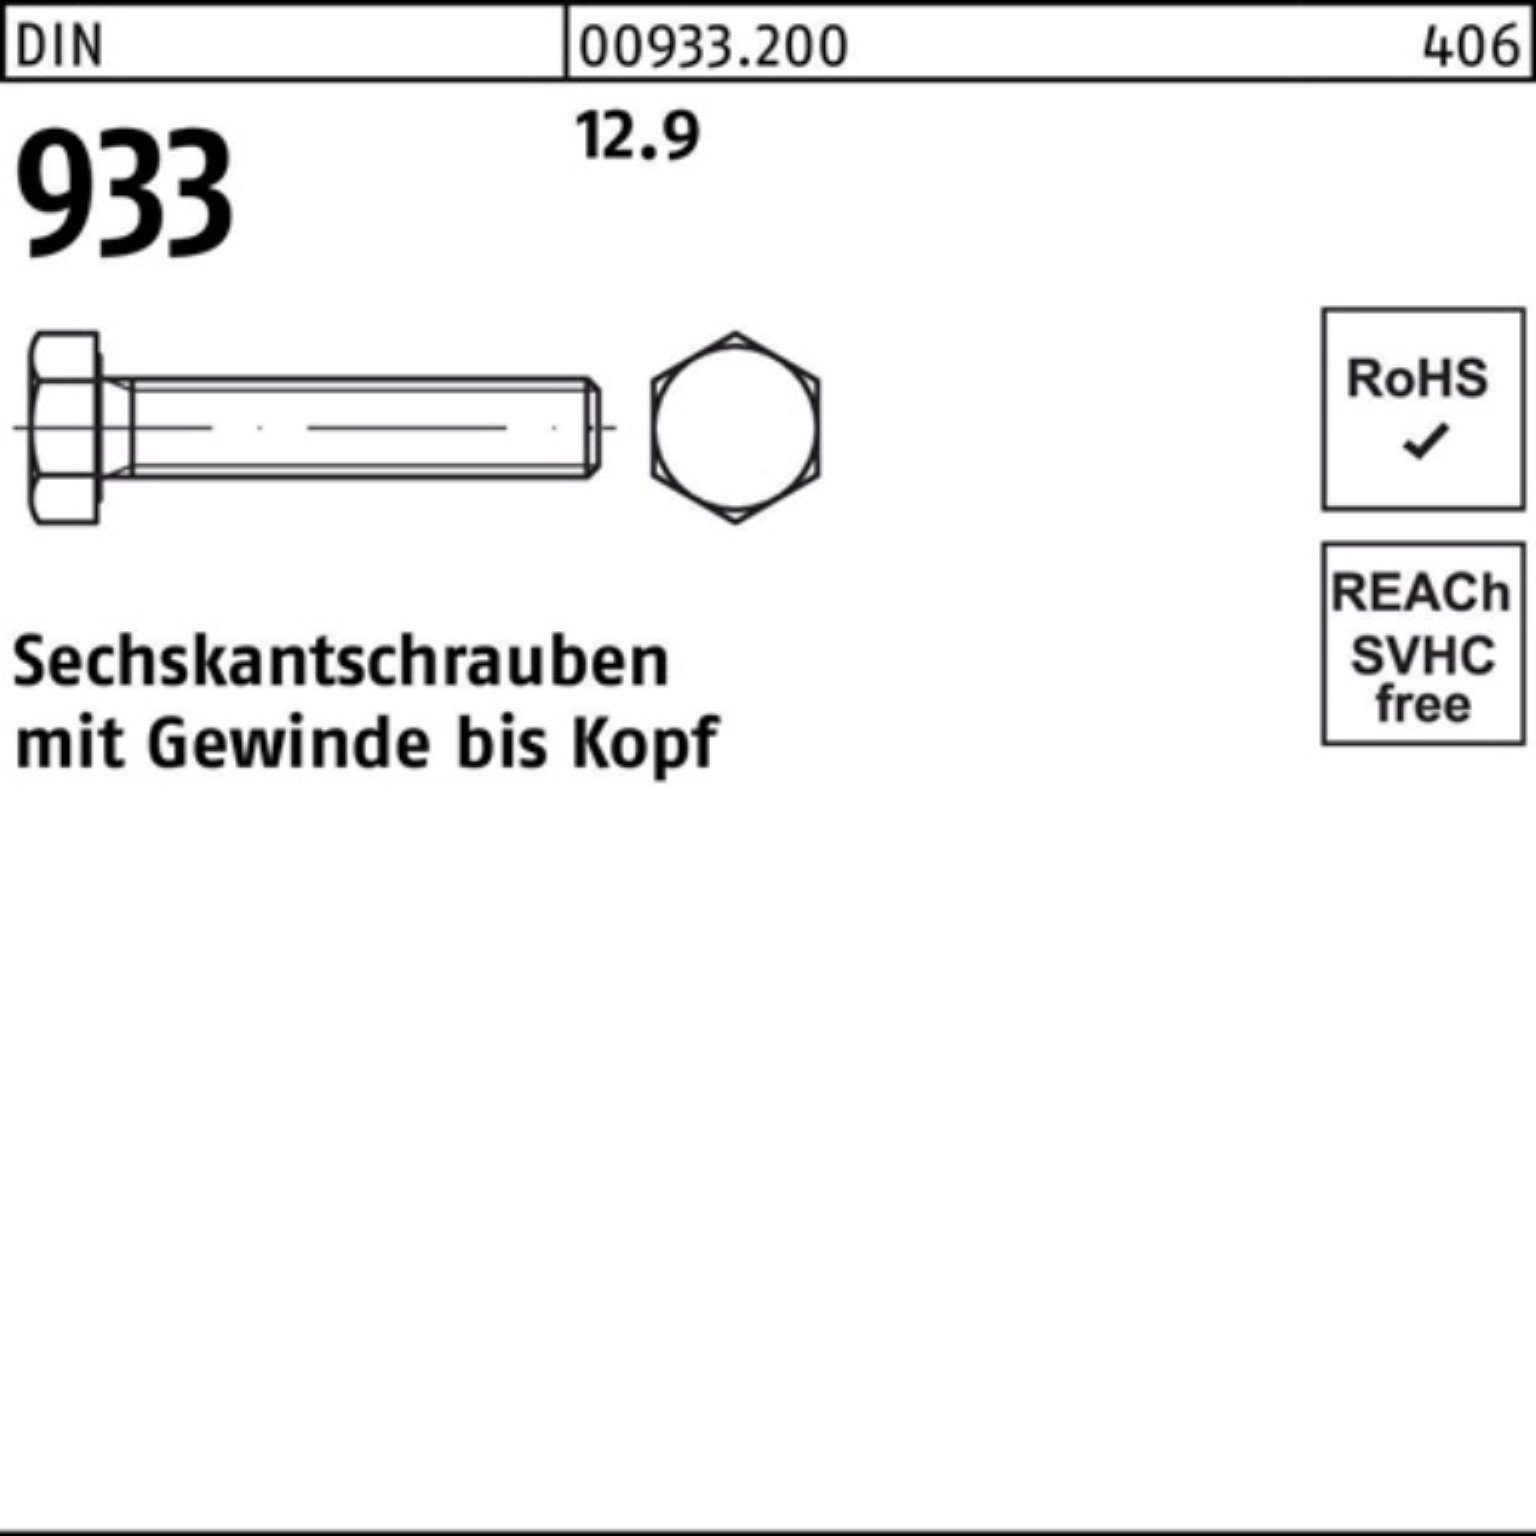 Stück Pack 93 VG DIN Reyher 100er DIN 10 100 Sechskantschraube 12.9 M24x 933 Sechskantschraube